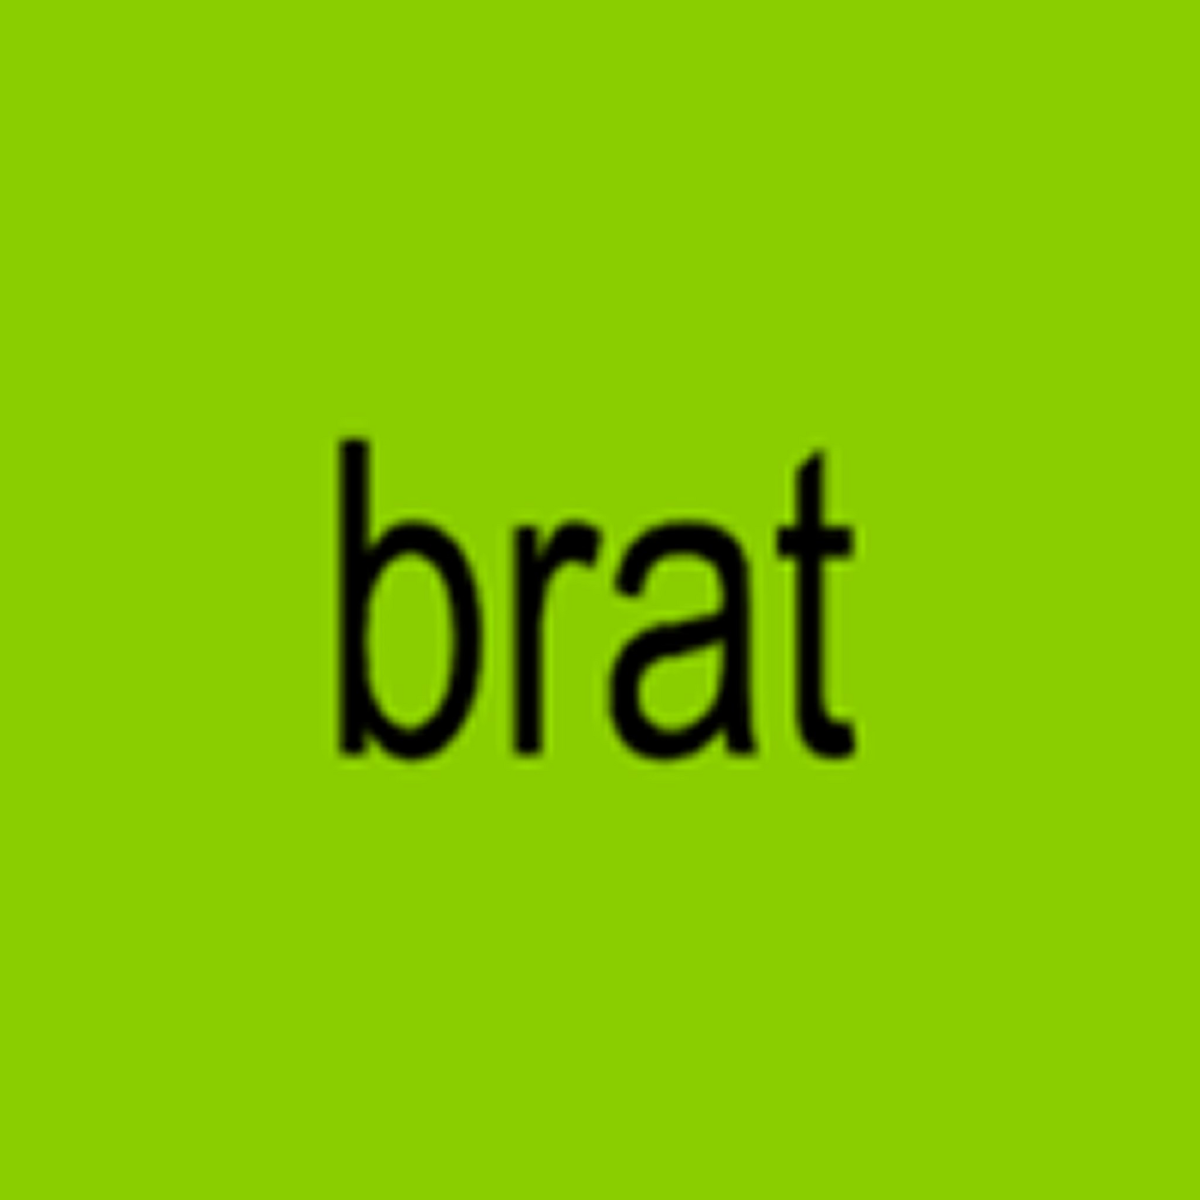 Charli XCX announces new album Brat, releases two singles 